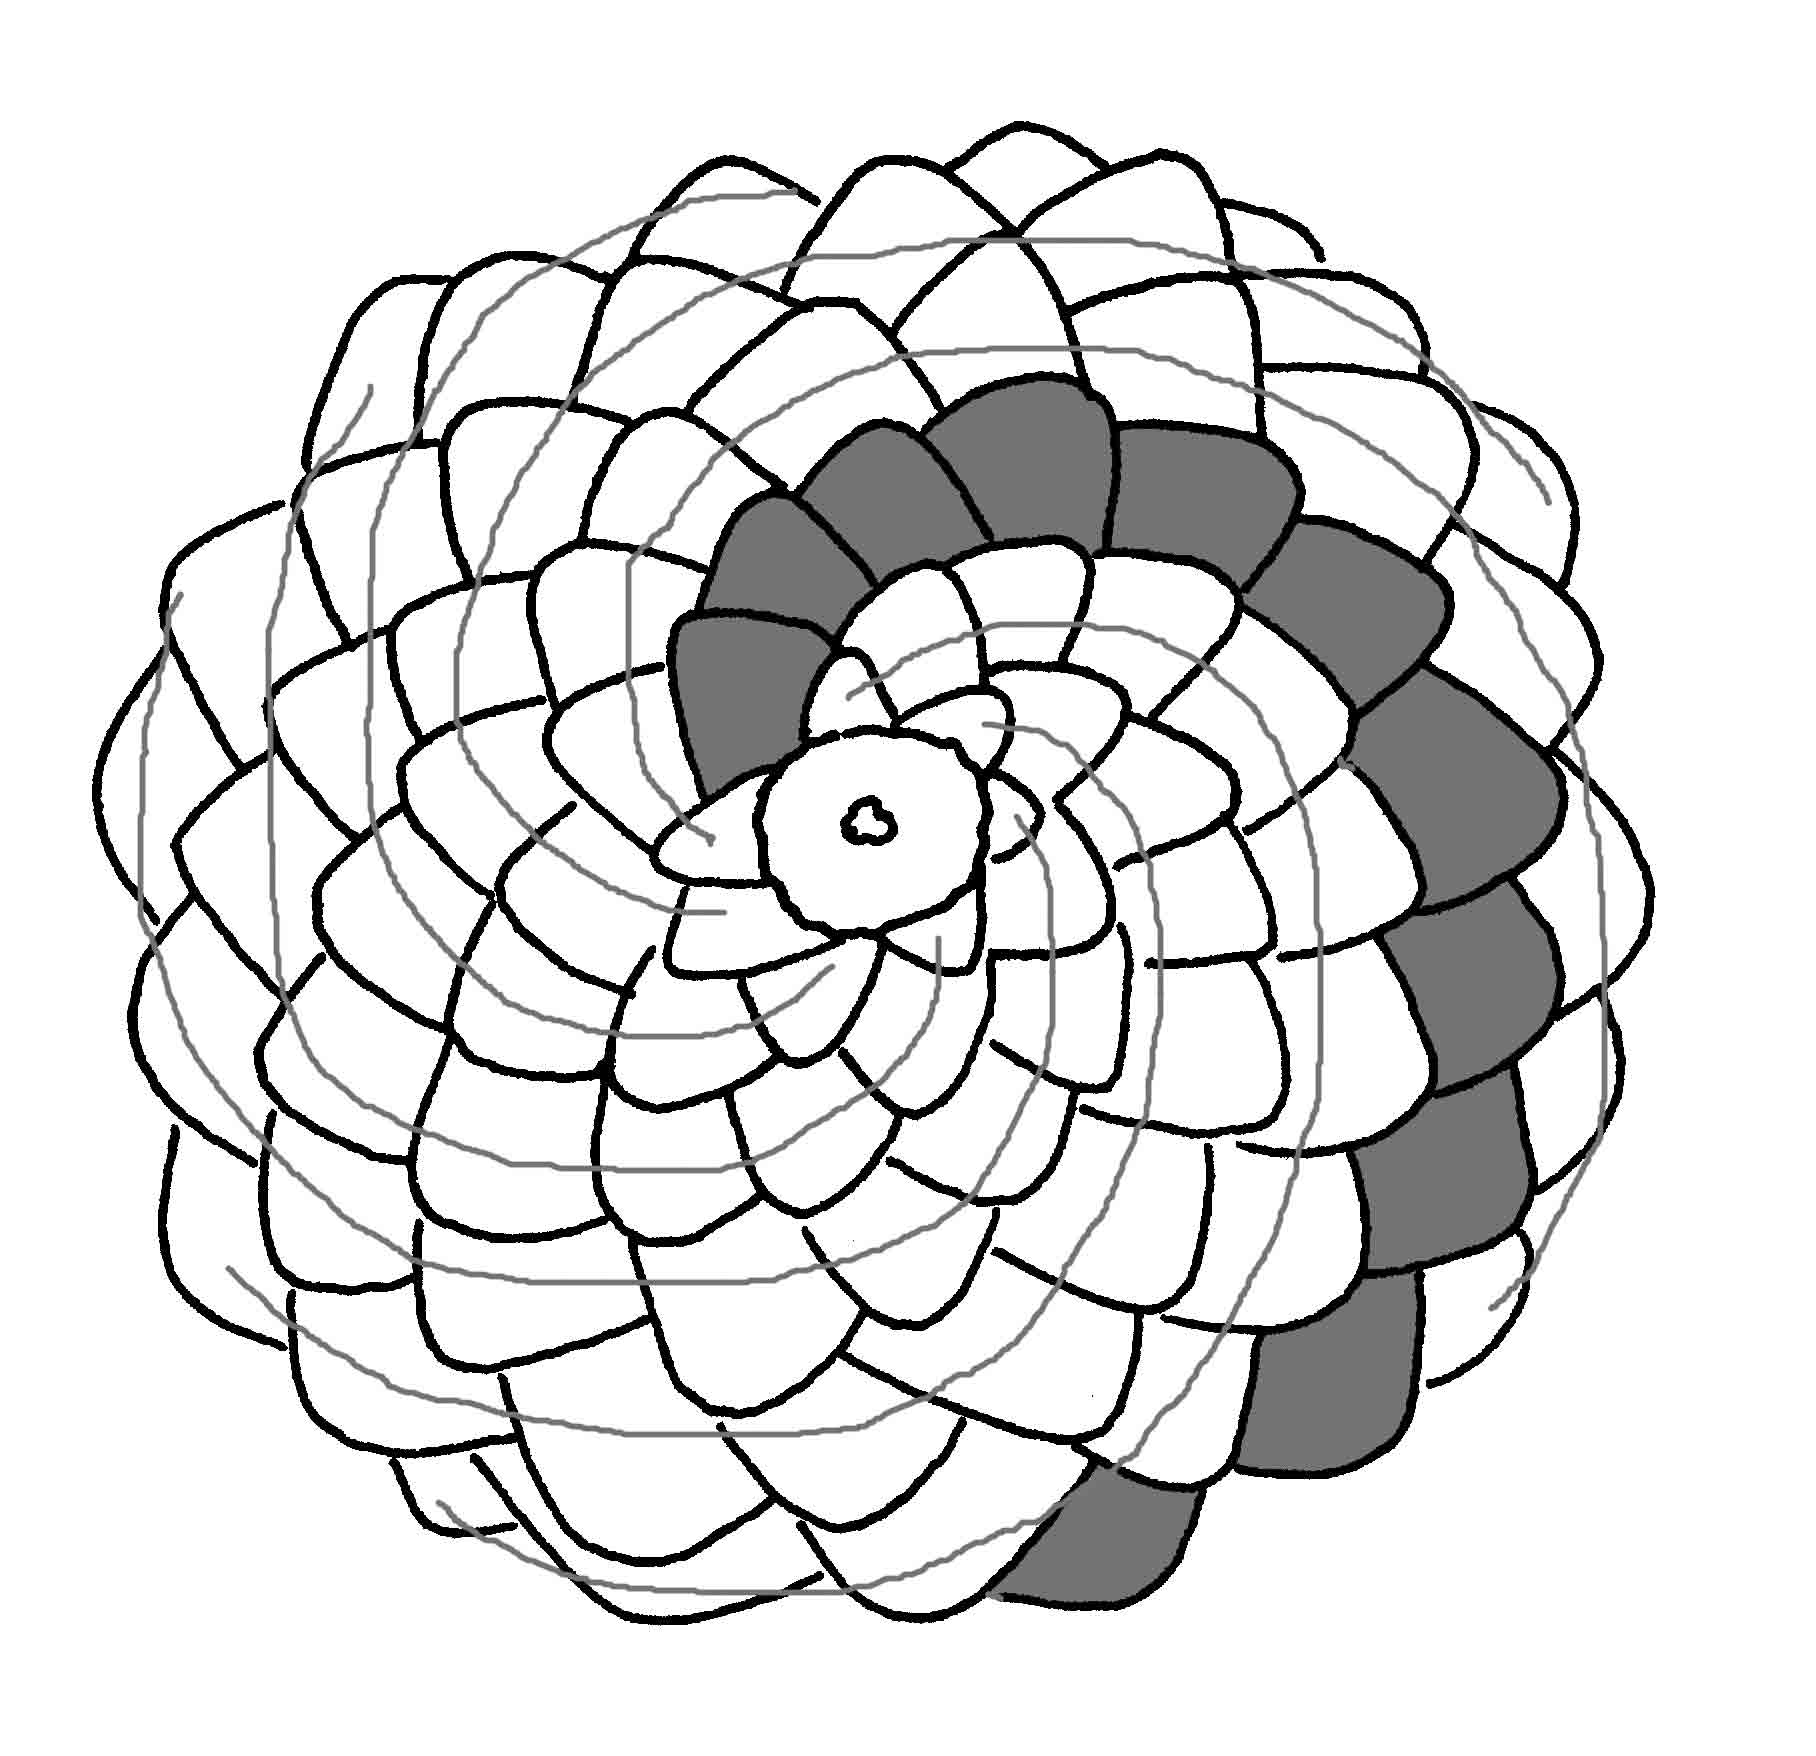 fibonacci sequence in nature pinecone